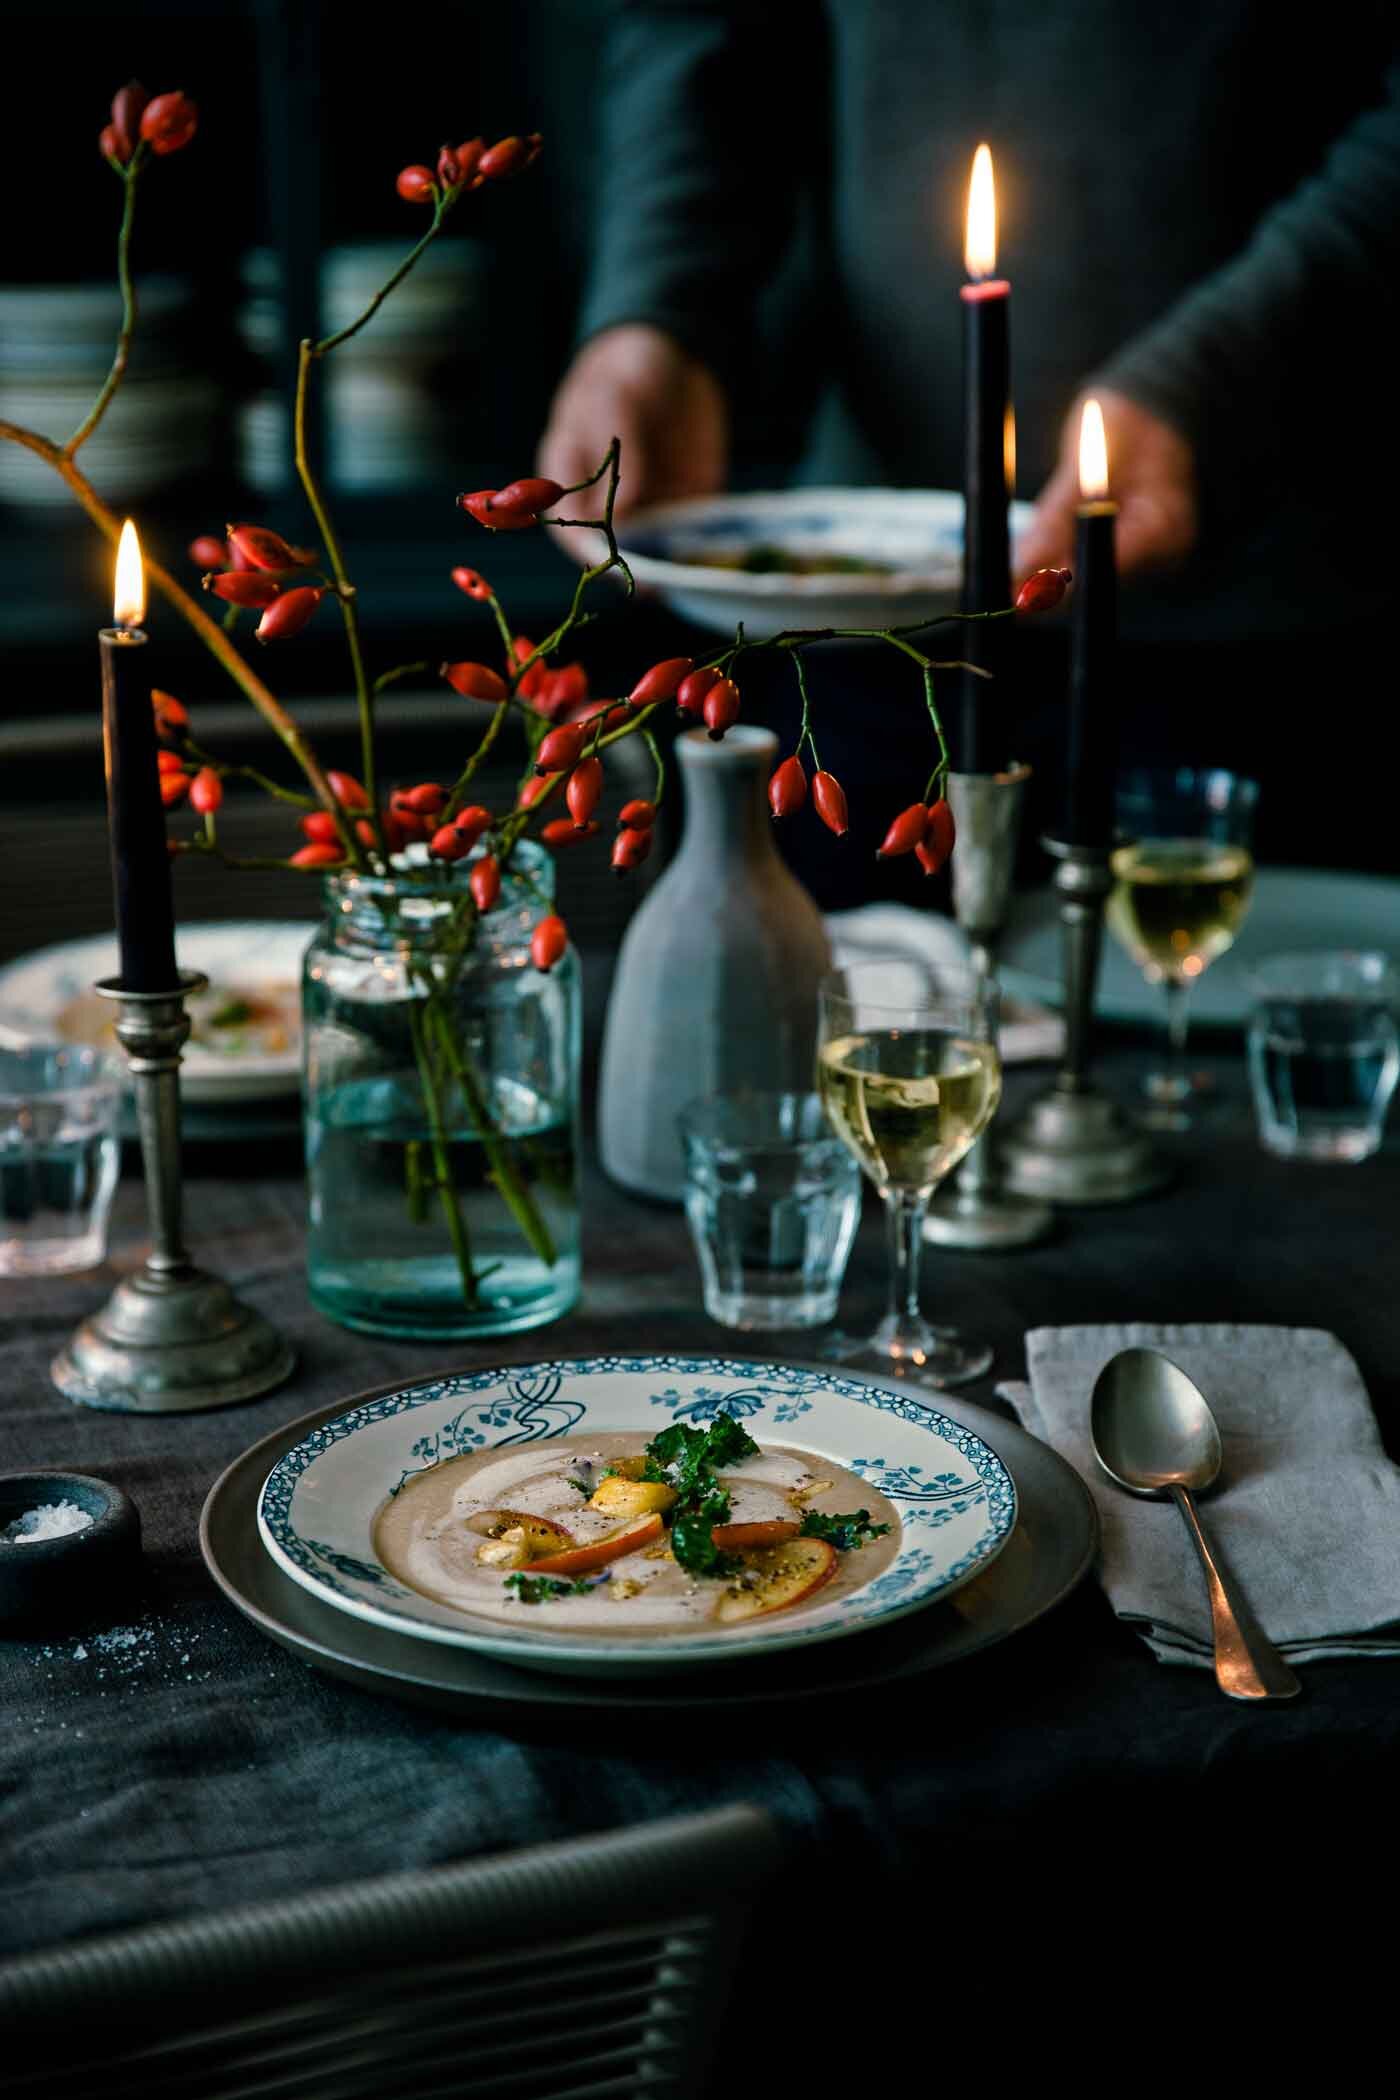 maronensuppe-apfel-gruenkohl-weihnachtsmenu-rezepte-veggielicious-food-fotografie-311-dt-hoch.jpg